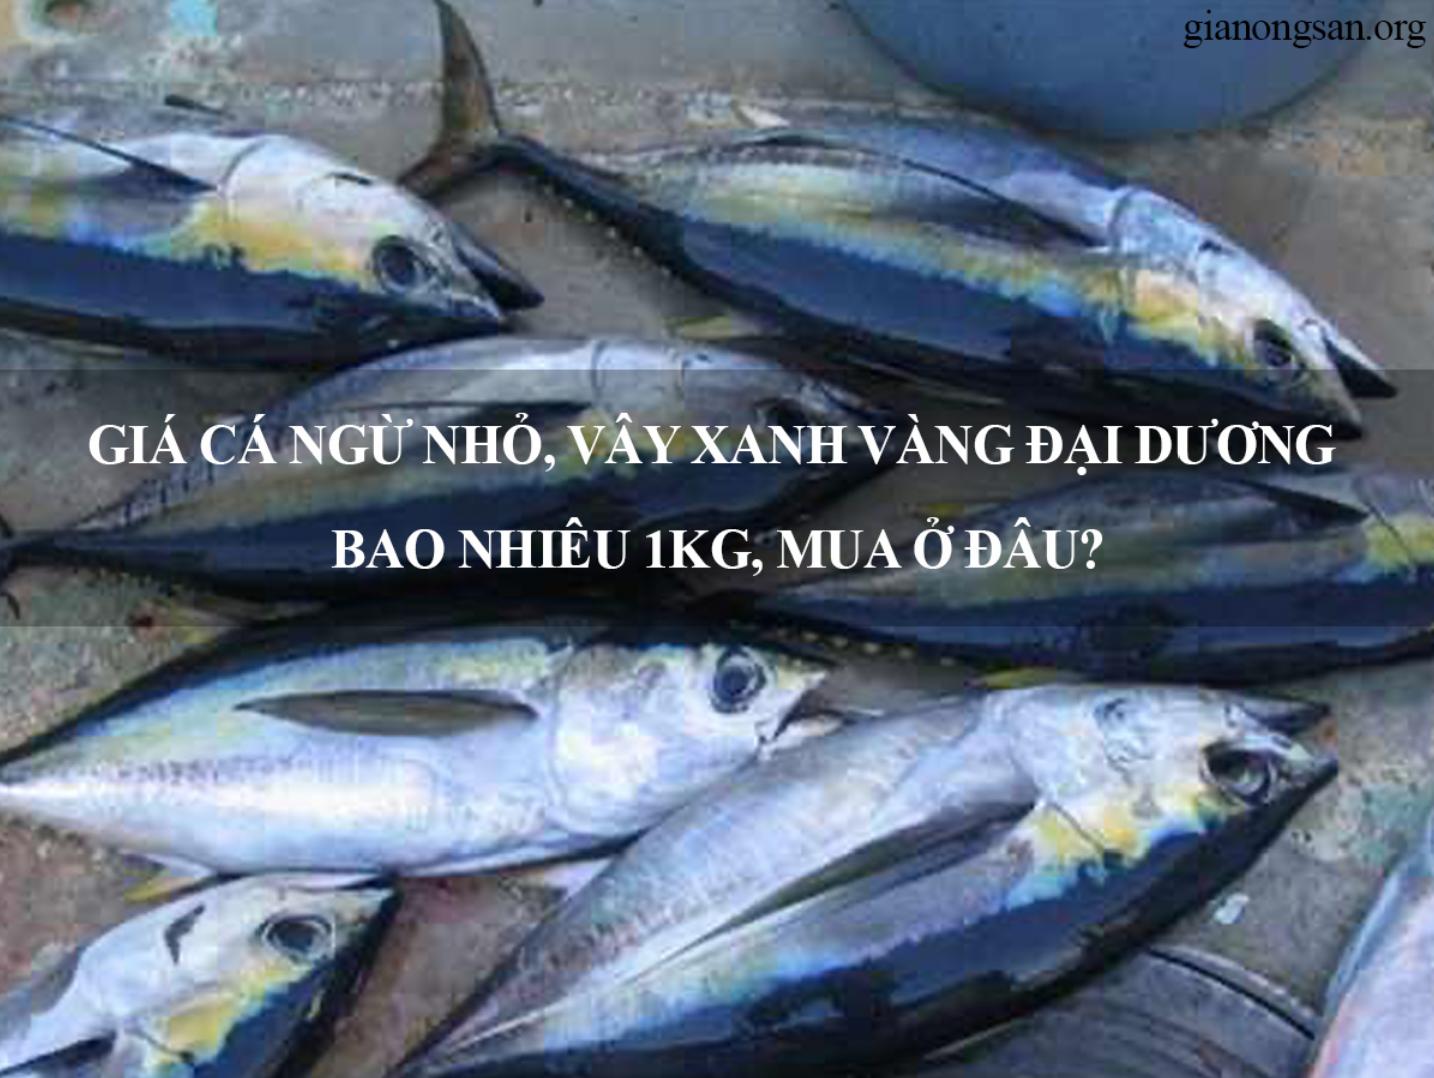 Giá cá ngừ nhỏ, vây xanh vàng đại dương bao nhiêu 1kg, Mua ở đâu?